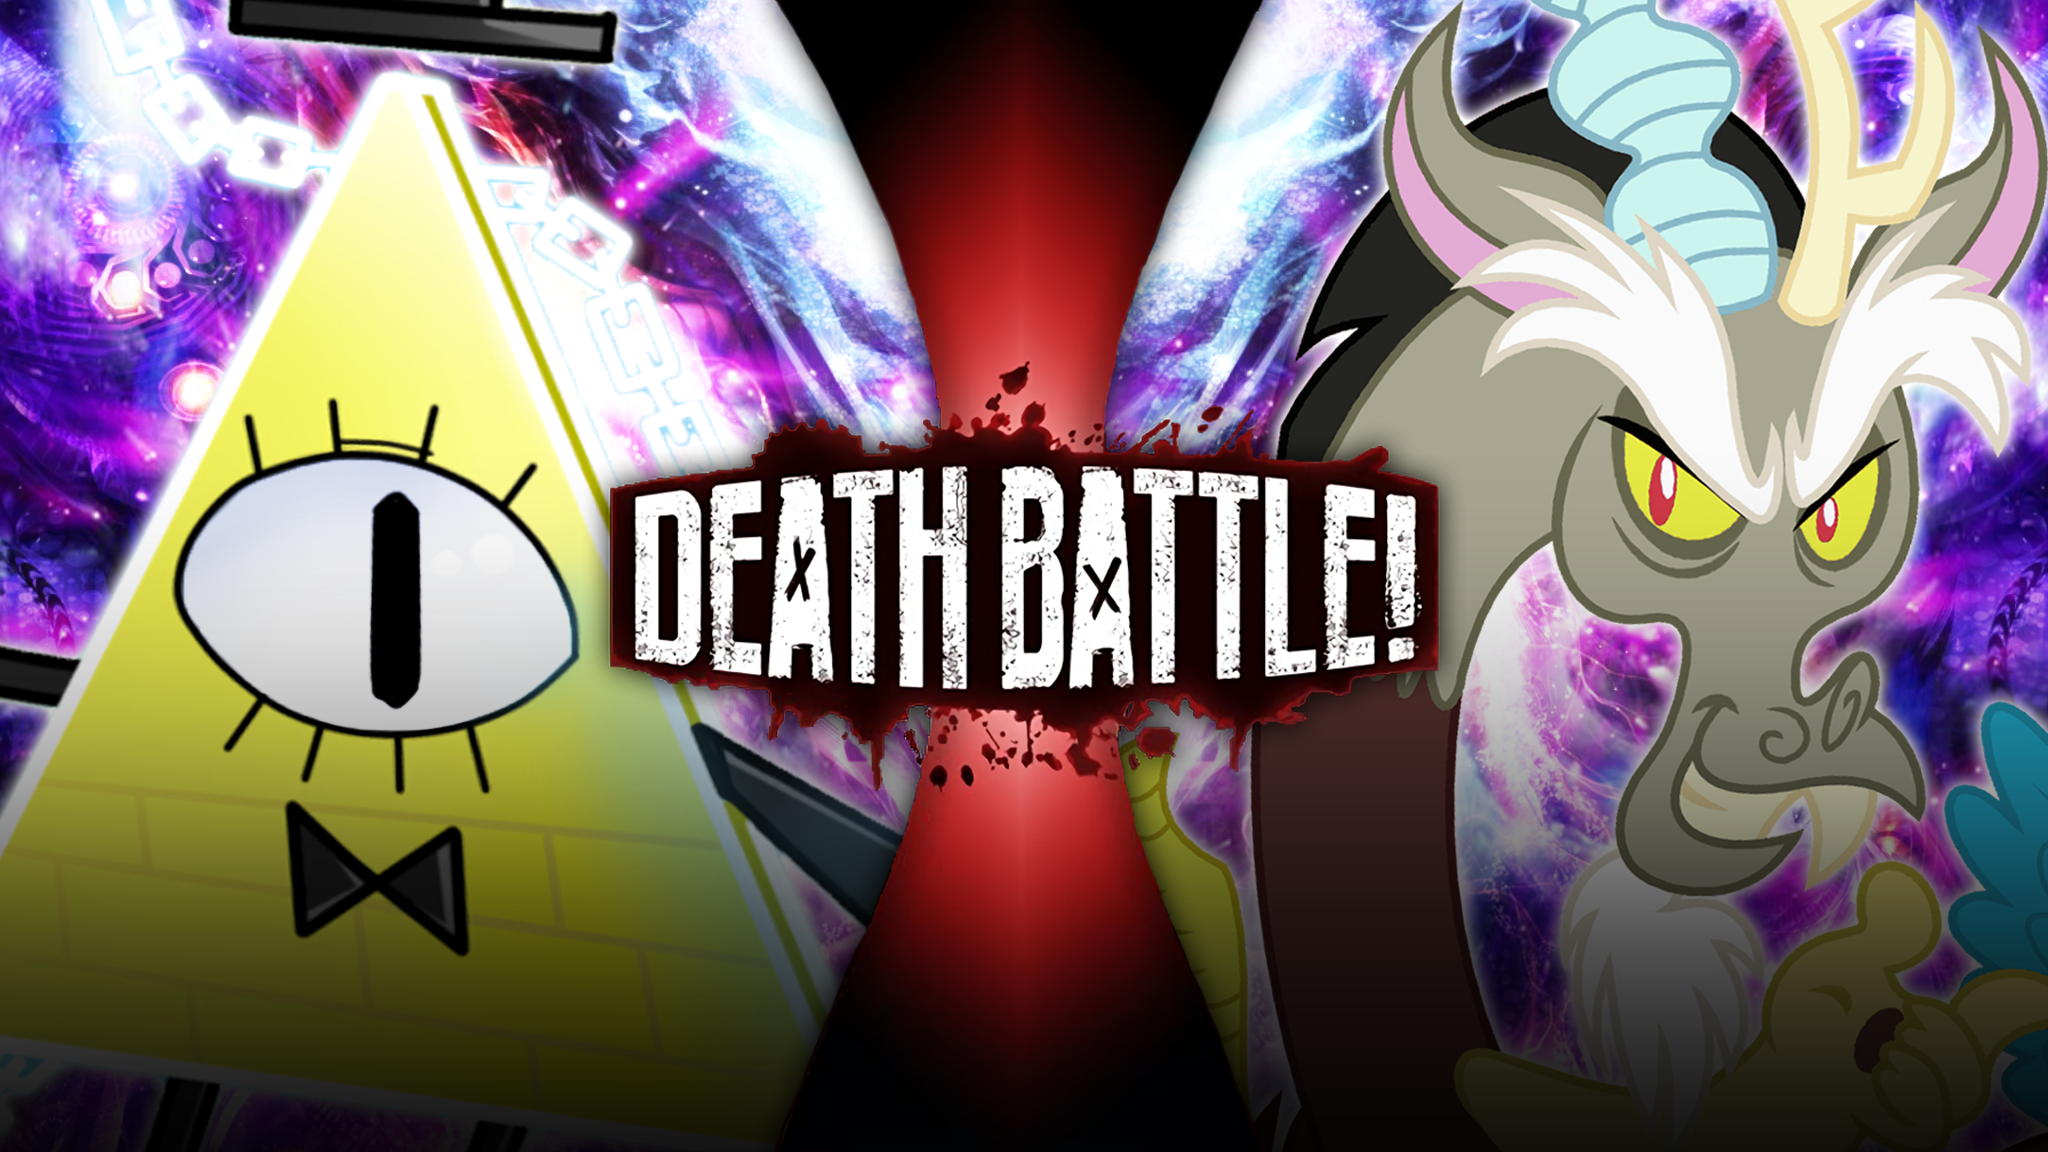 Gambit vs Johnny (marvel vs guilty Gear) fan made death battle trailer 